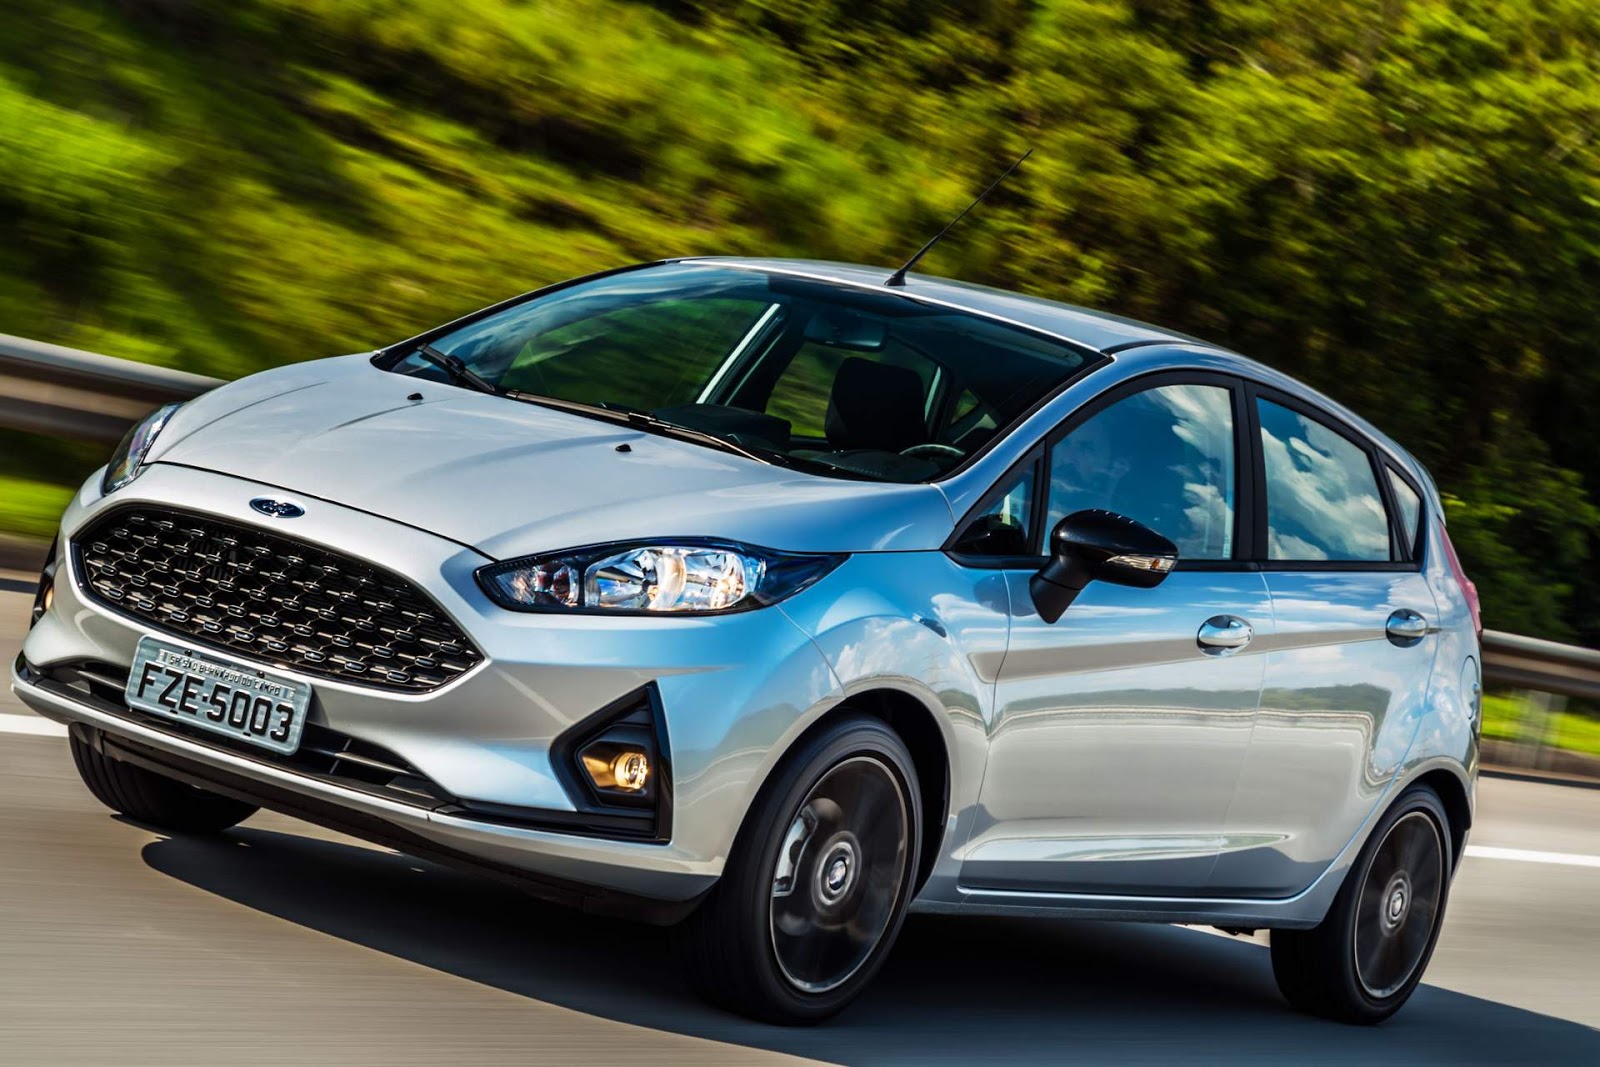 Ford New Fiesta 2018 consumo, preços e especificações